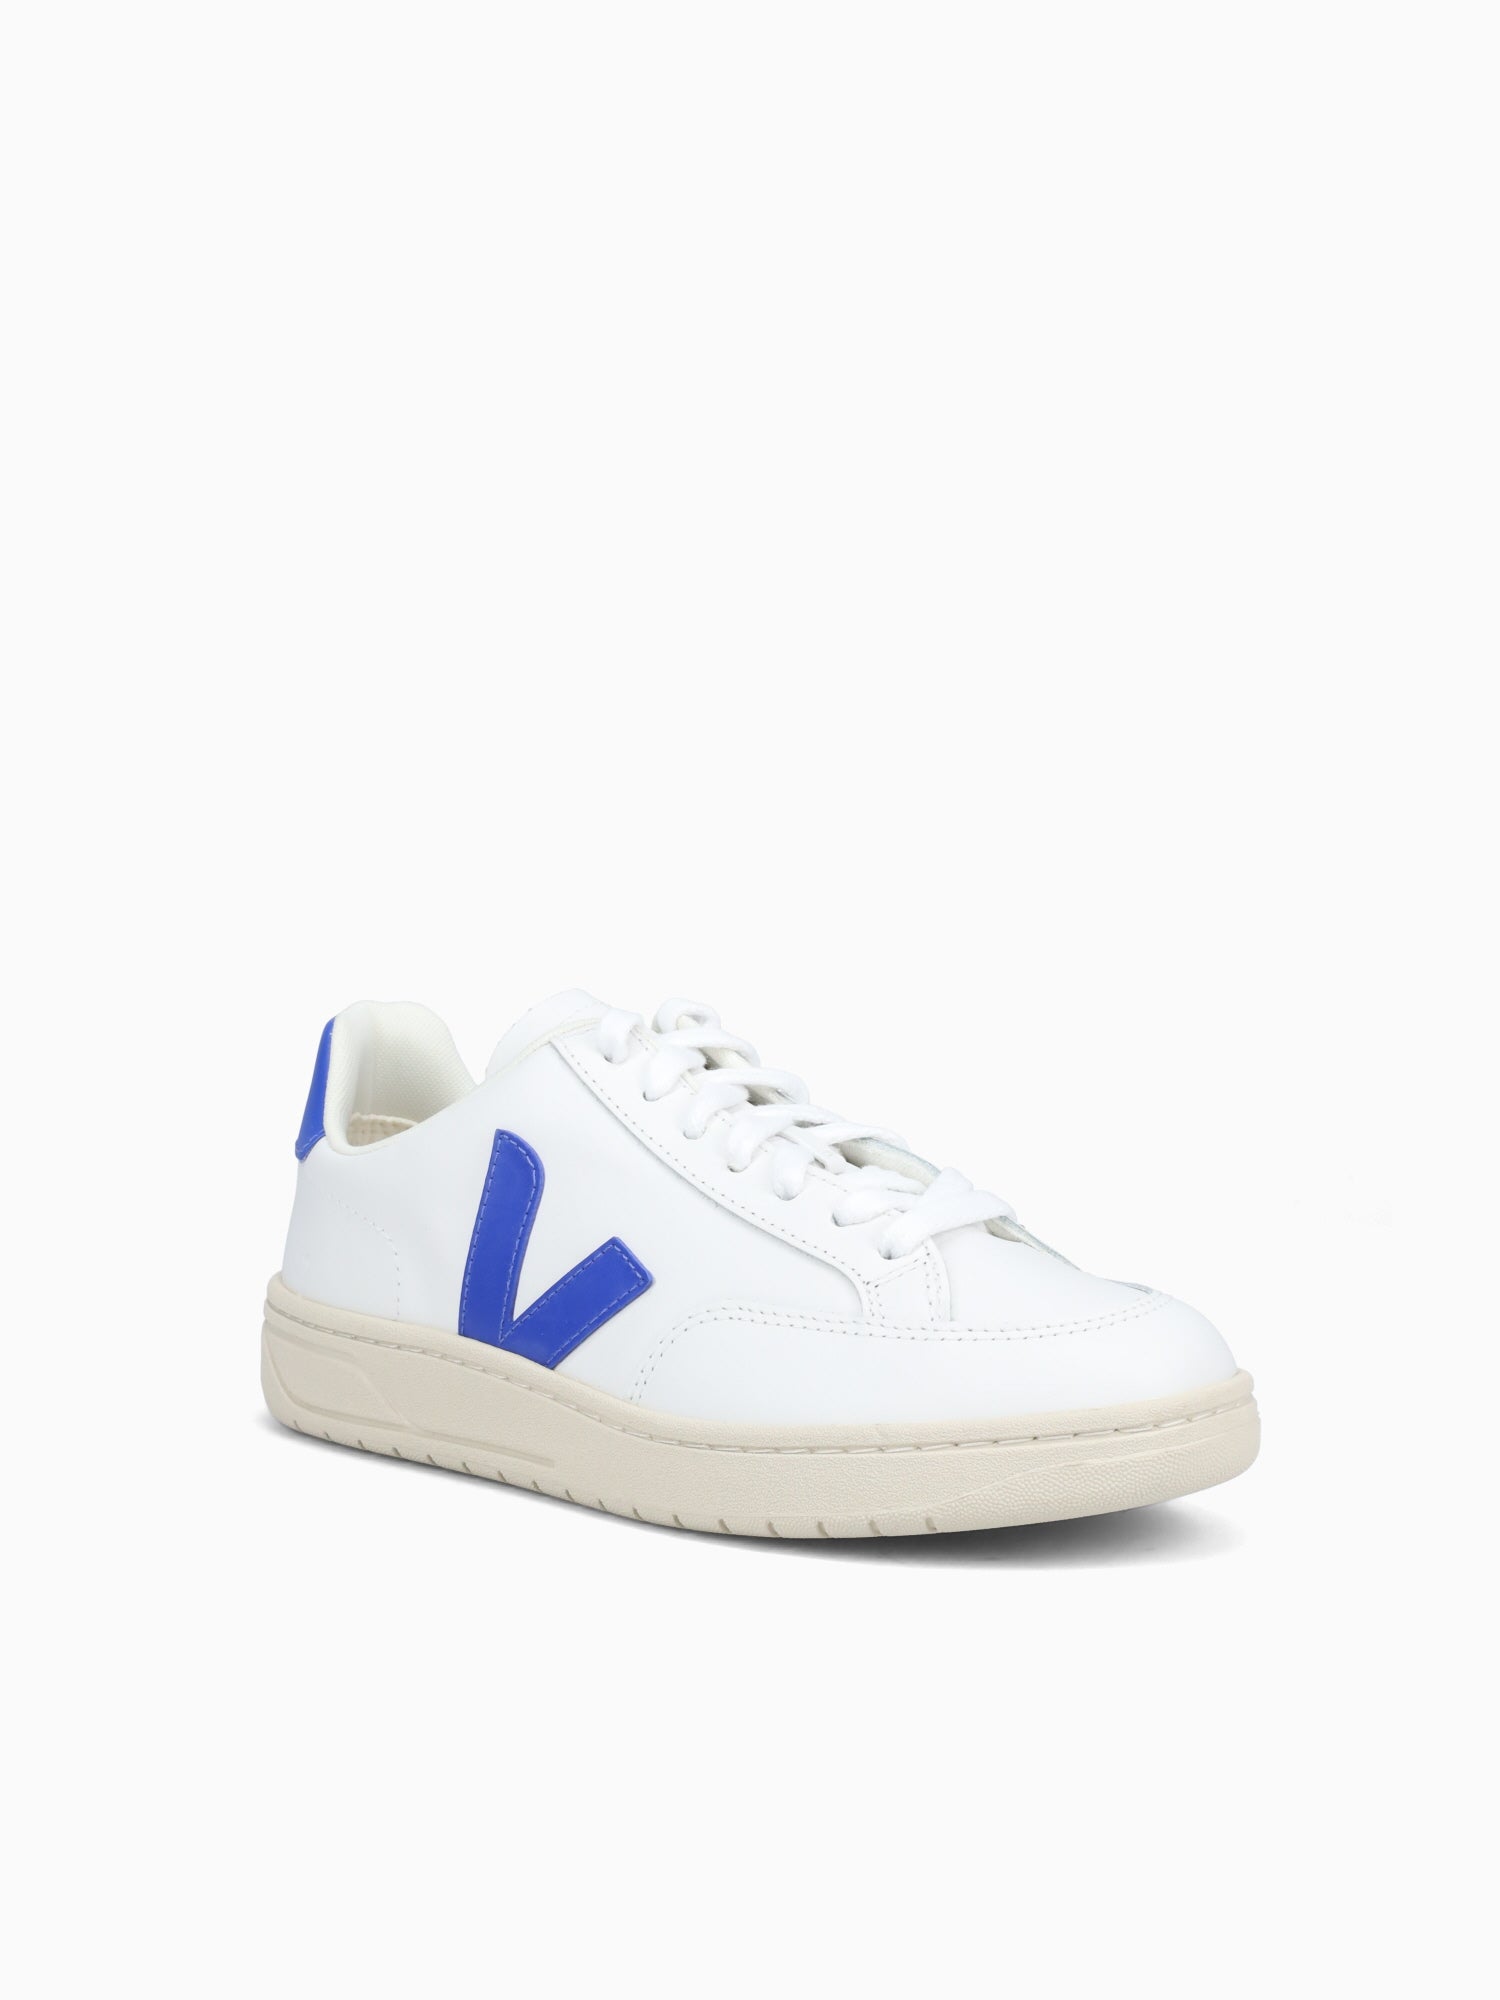 V12– Novus Shoes